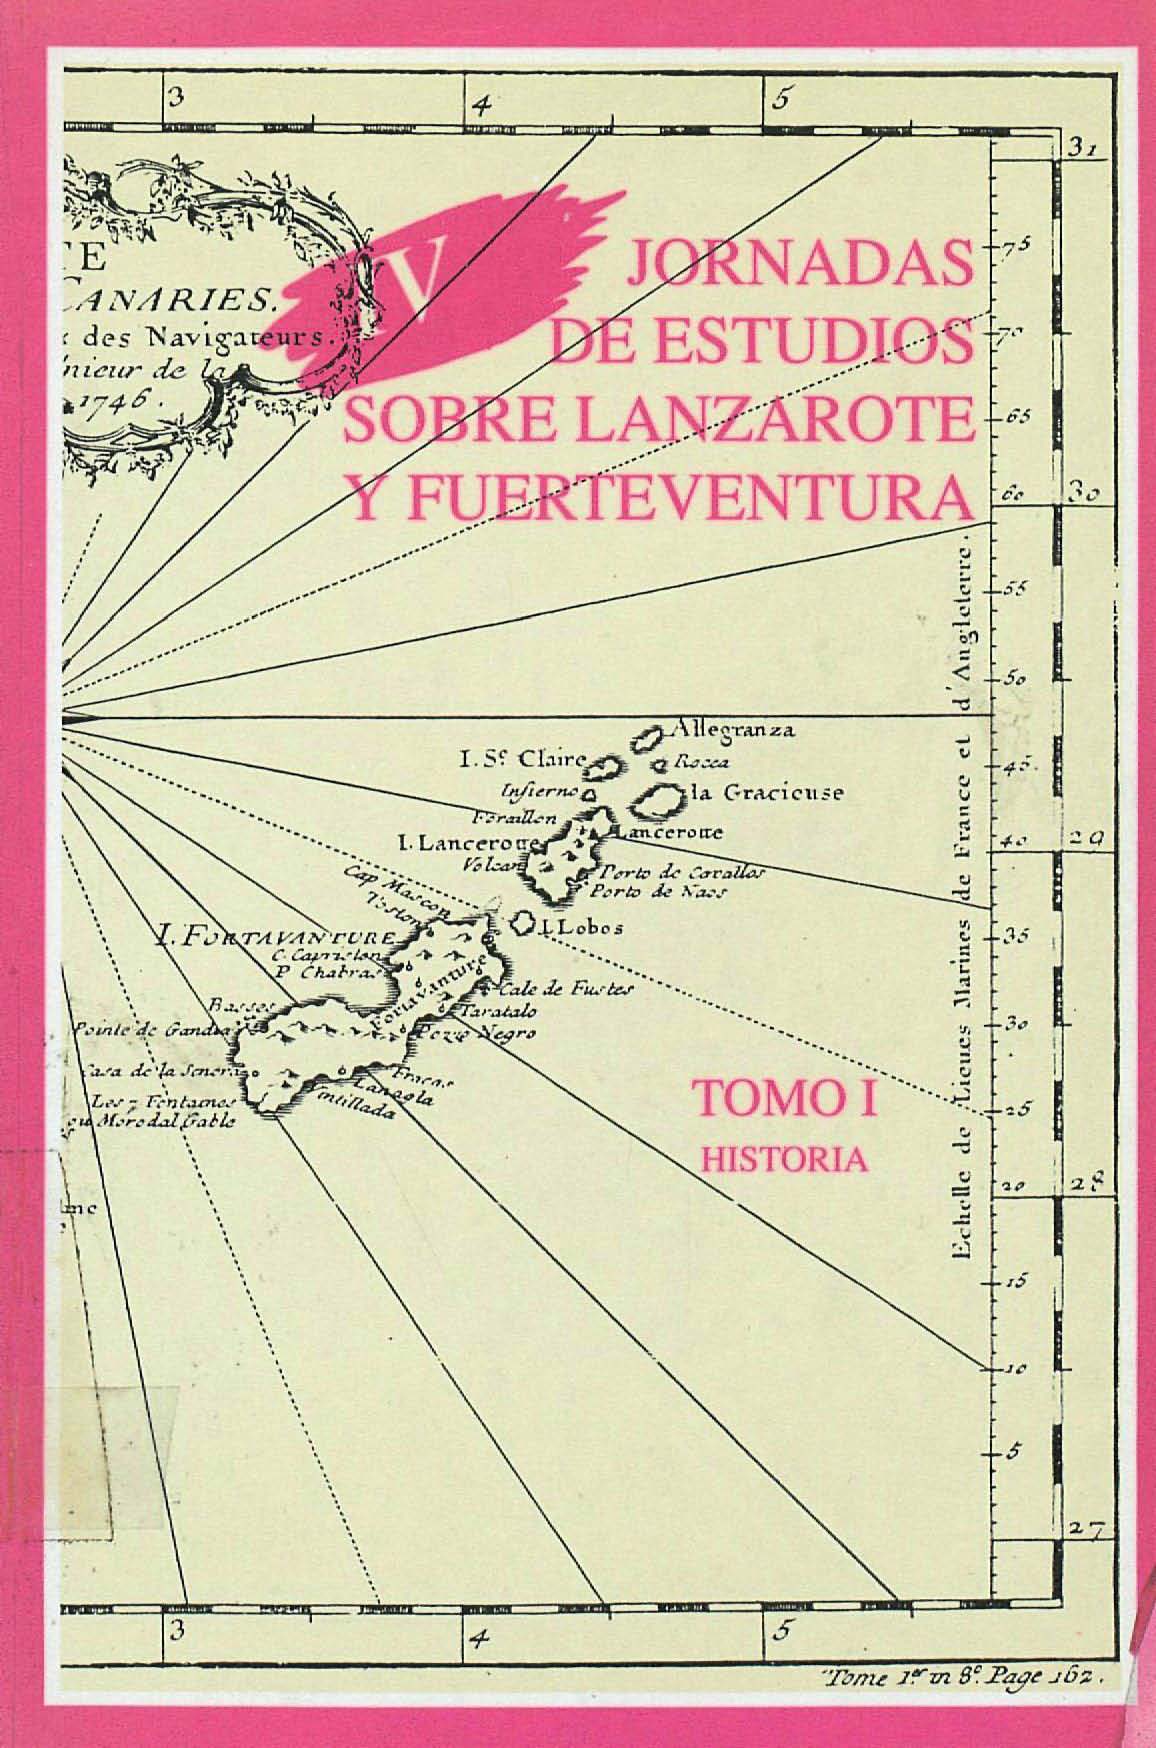 La crisis de la cochinilla en Lanzarote, 1875-1890